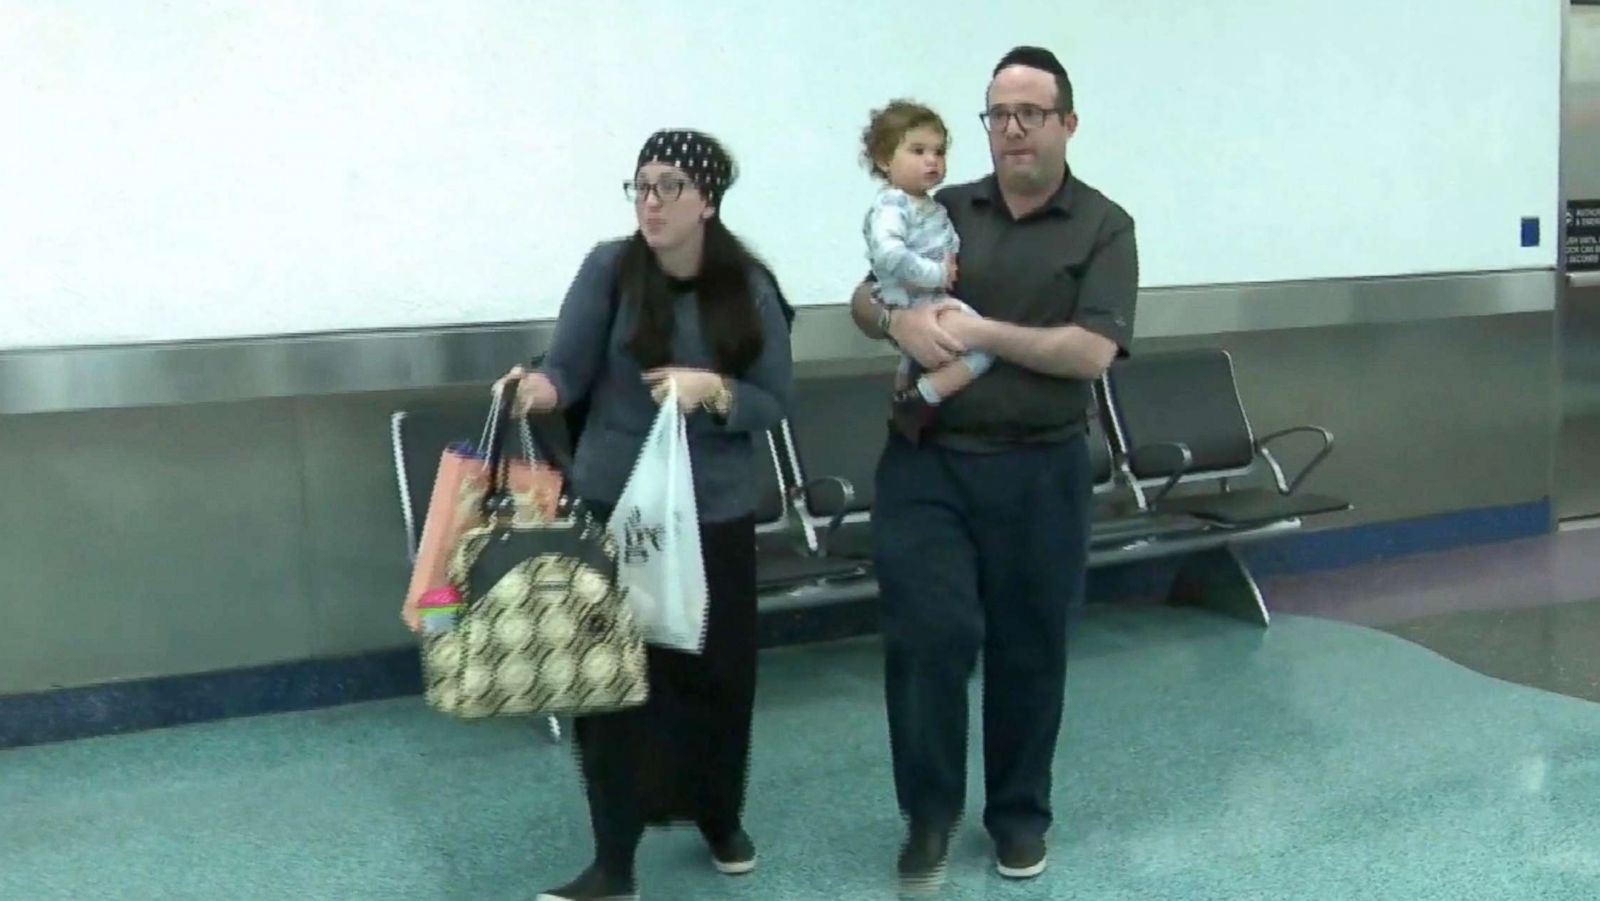 O familie a fost alungata din avion. Motivul invocat de stewardesa e nefondat